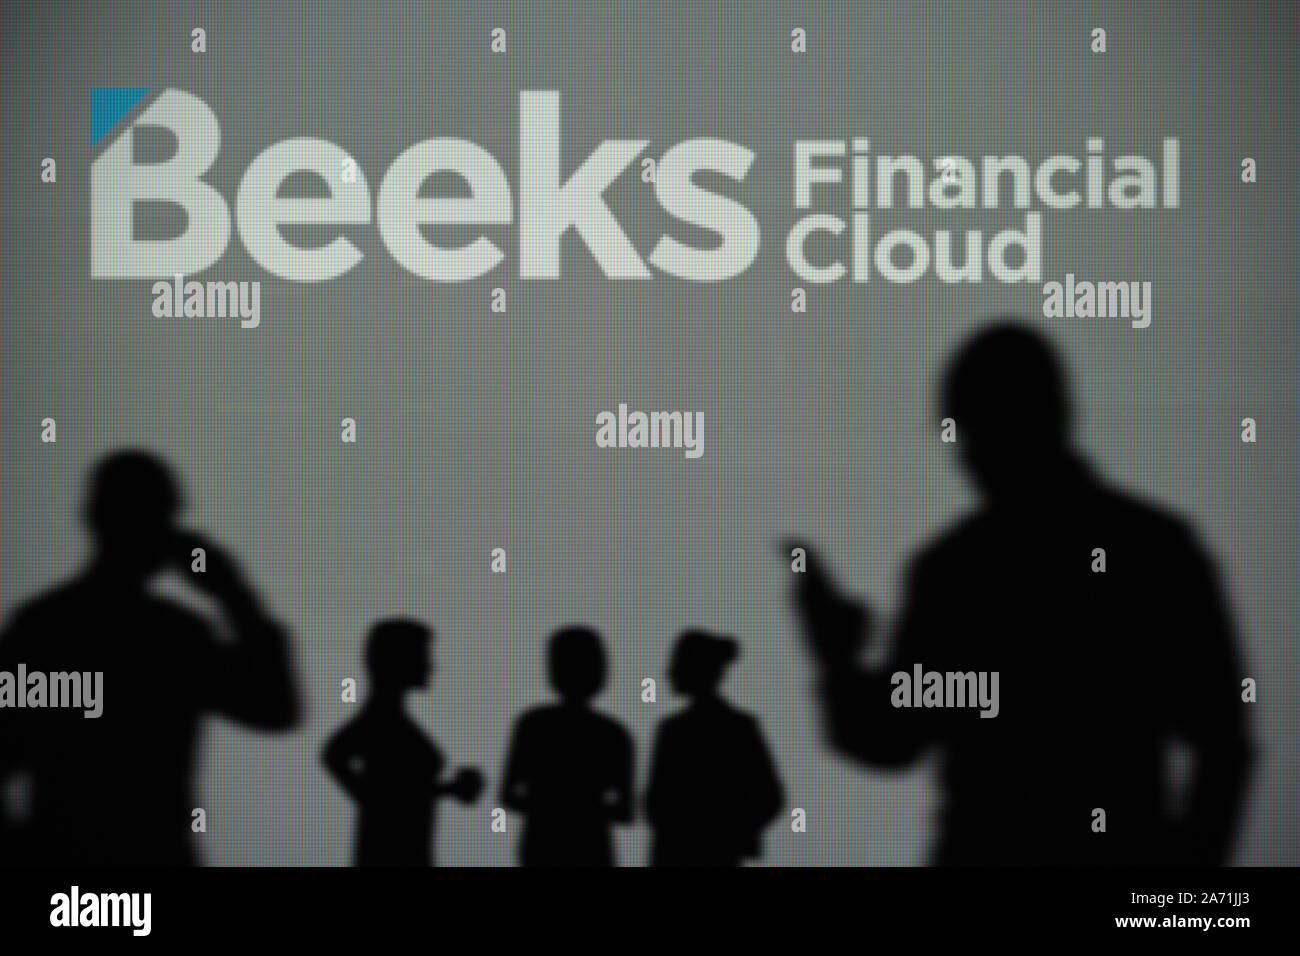 La nube financiera Beeks logo es visto en una pantalla LED en el fondo mientras una silueta persona utiliza un smartphone (uso Editorial solamente) Foto de stock